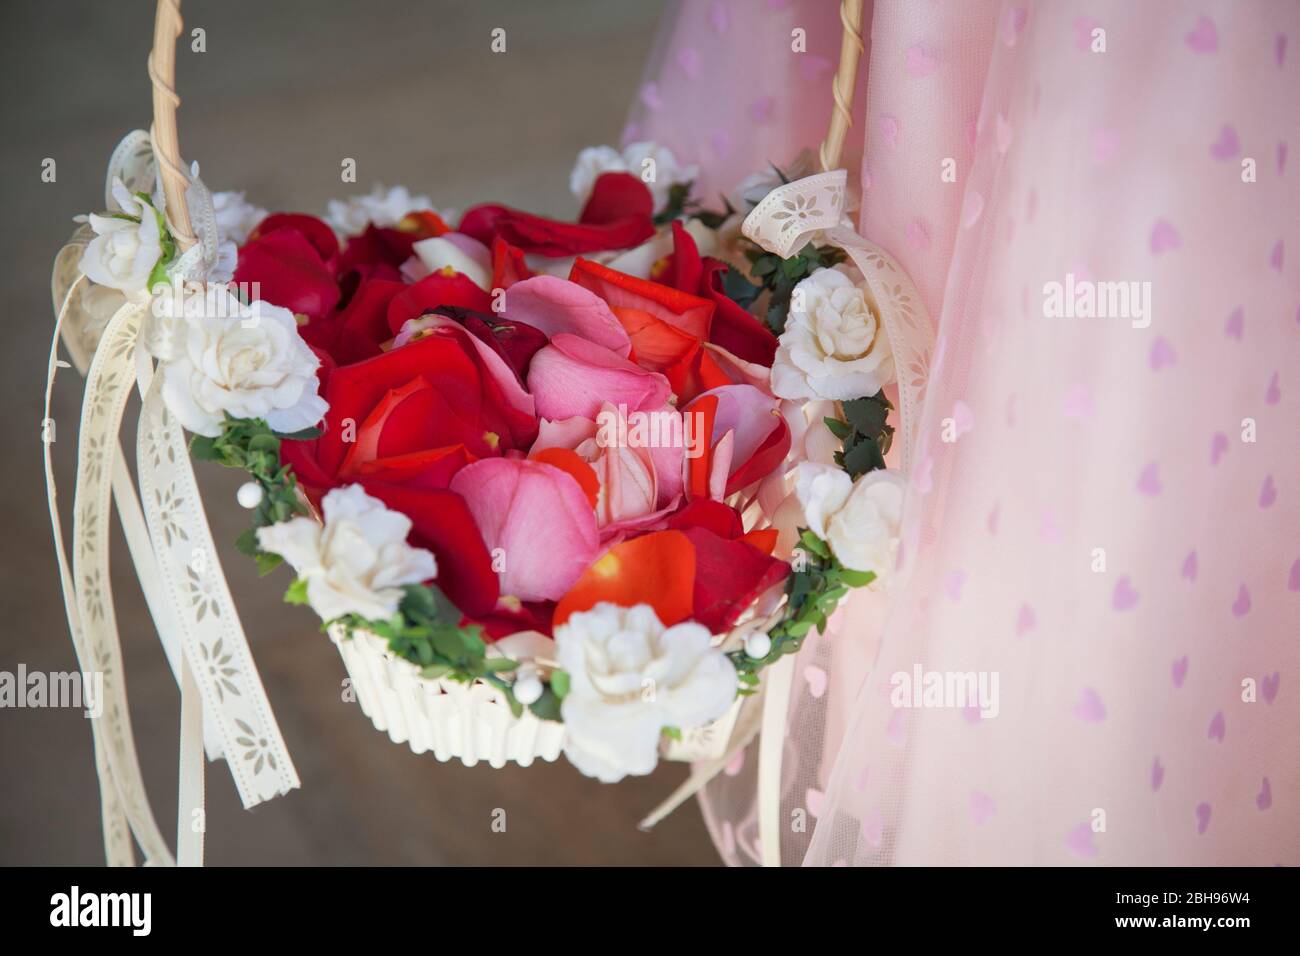 Main de fille avec panier de fleurs, pétales de rose rouge Banque D'Images